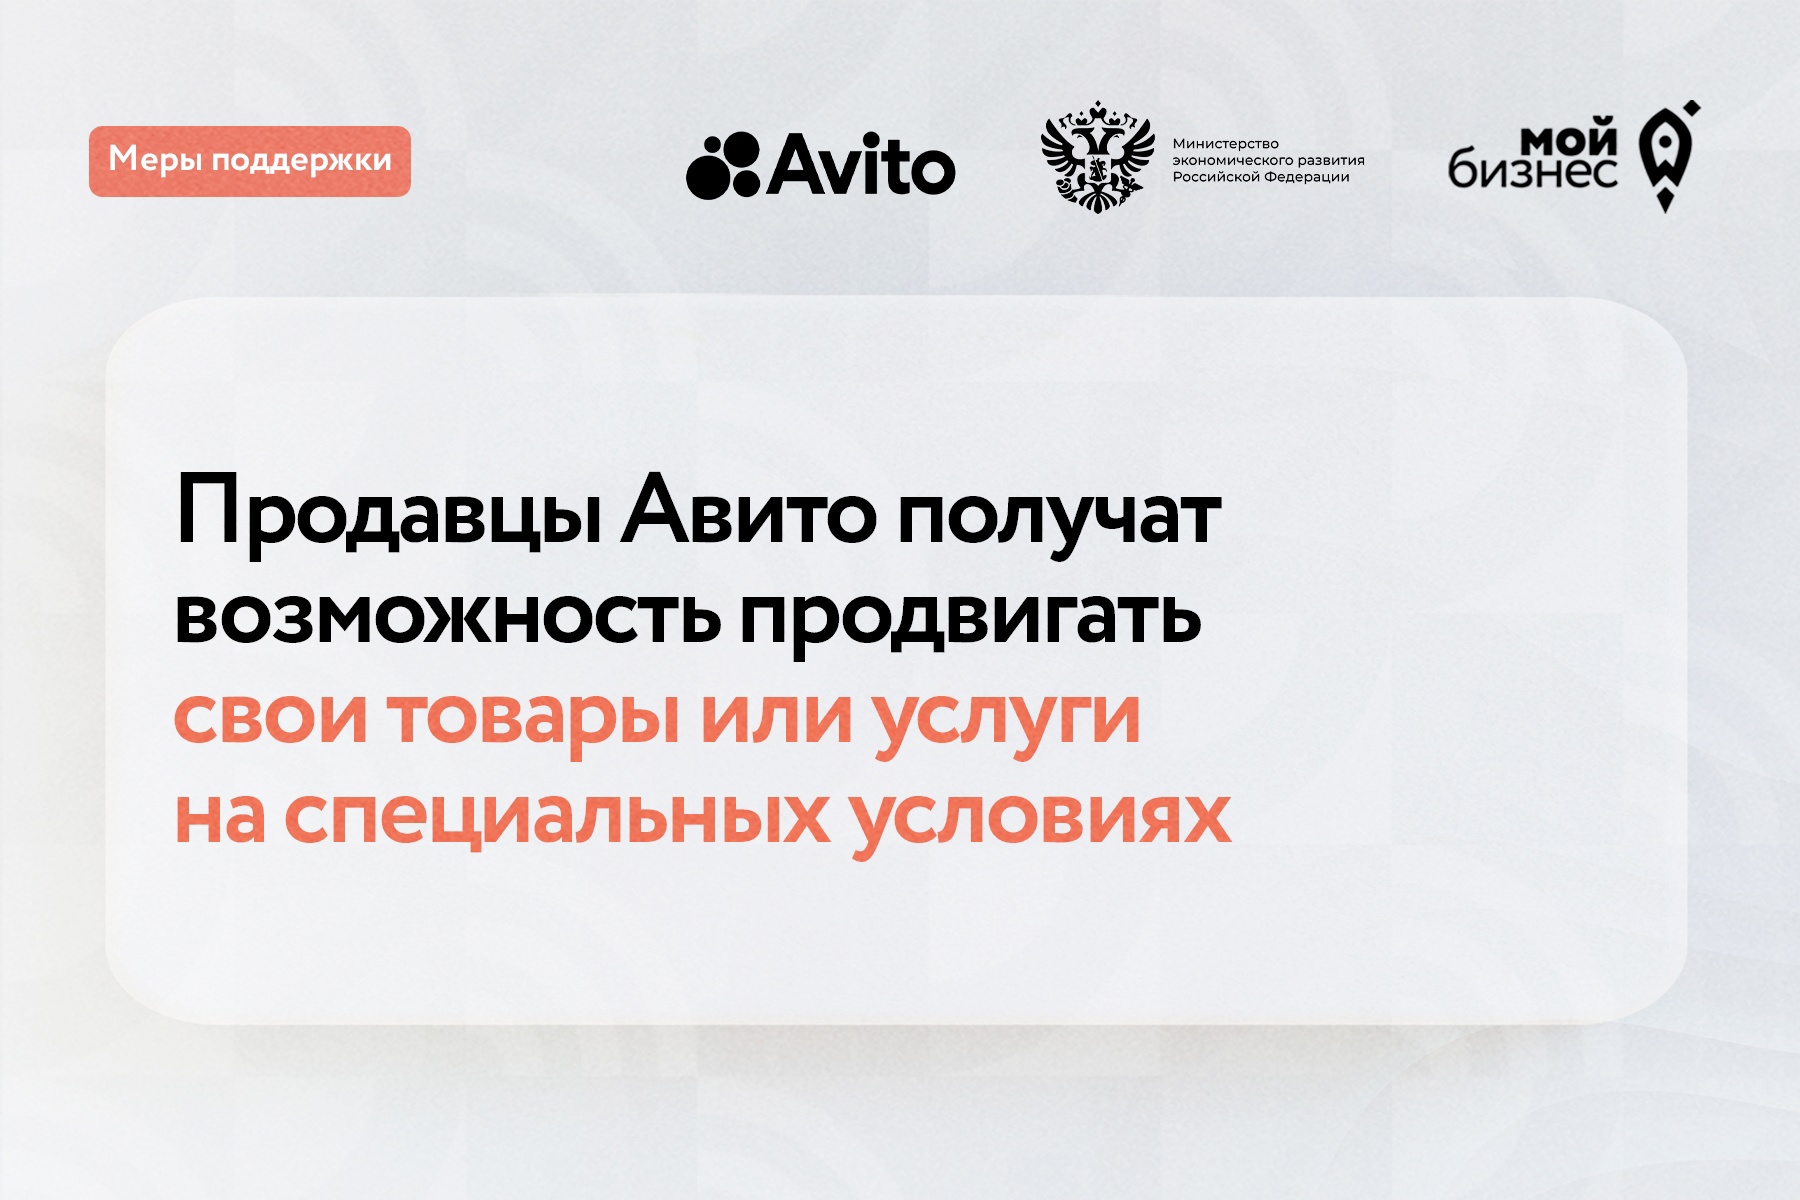 Омские предприниматели могут получить бонусы на продвижение в Авито